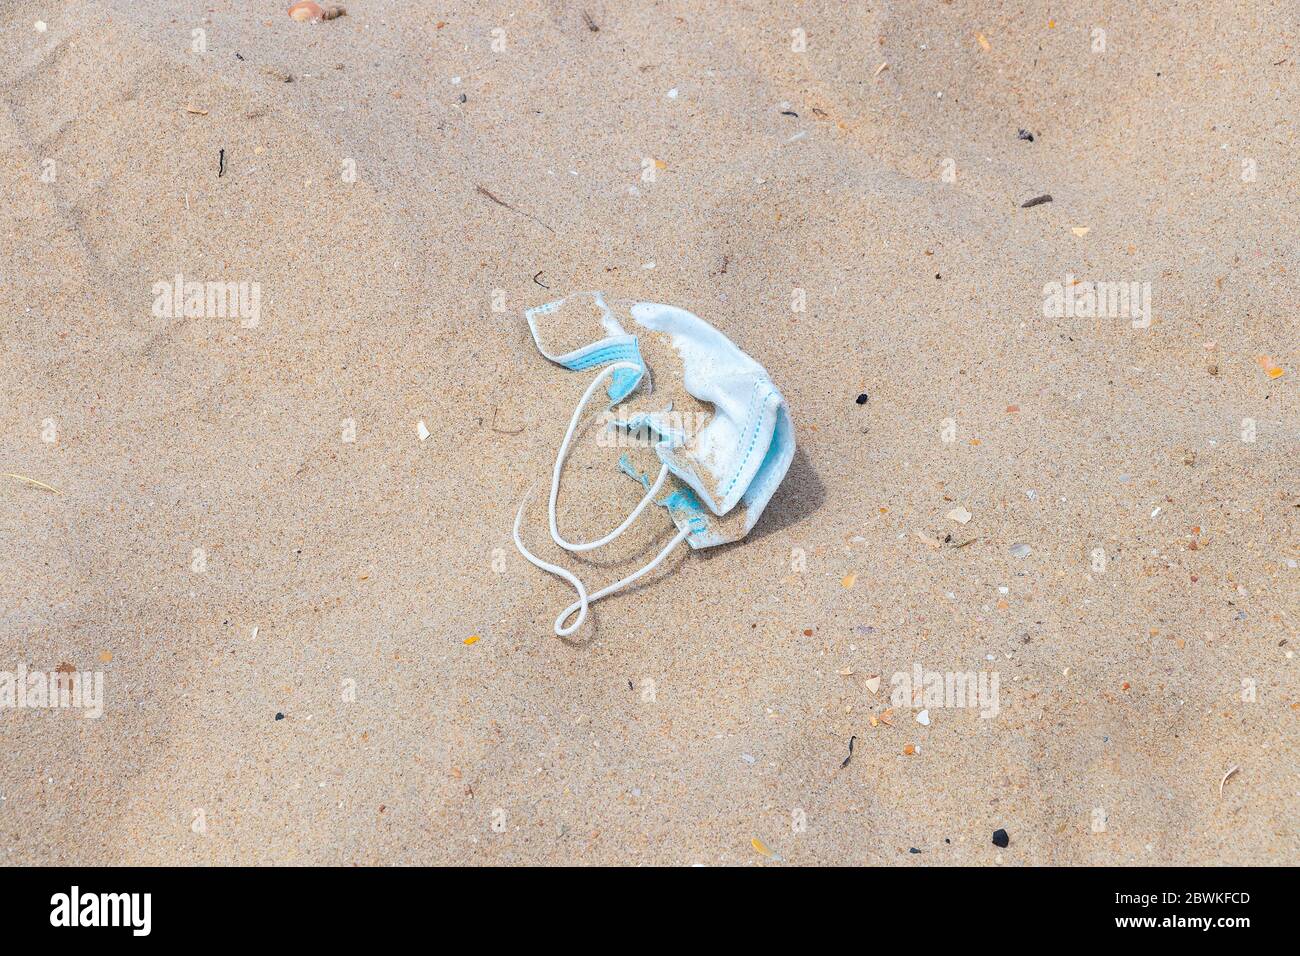 Eine ausgeworfene chirurgische Schutzmaske am Sandstrand. Schmutzige gebrauchte medizinische Maske am Strand nach dem Coronavirus covid-19 e verwendet werden verworfen Stockfoto